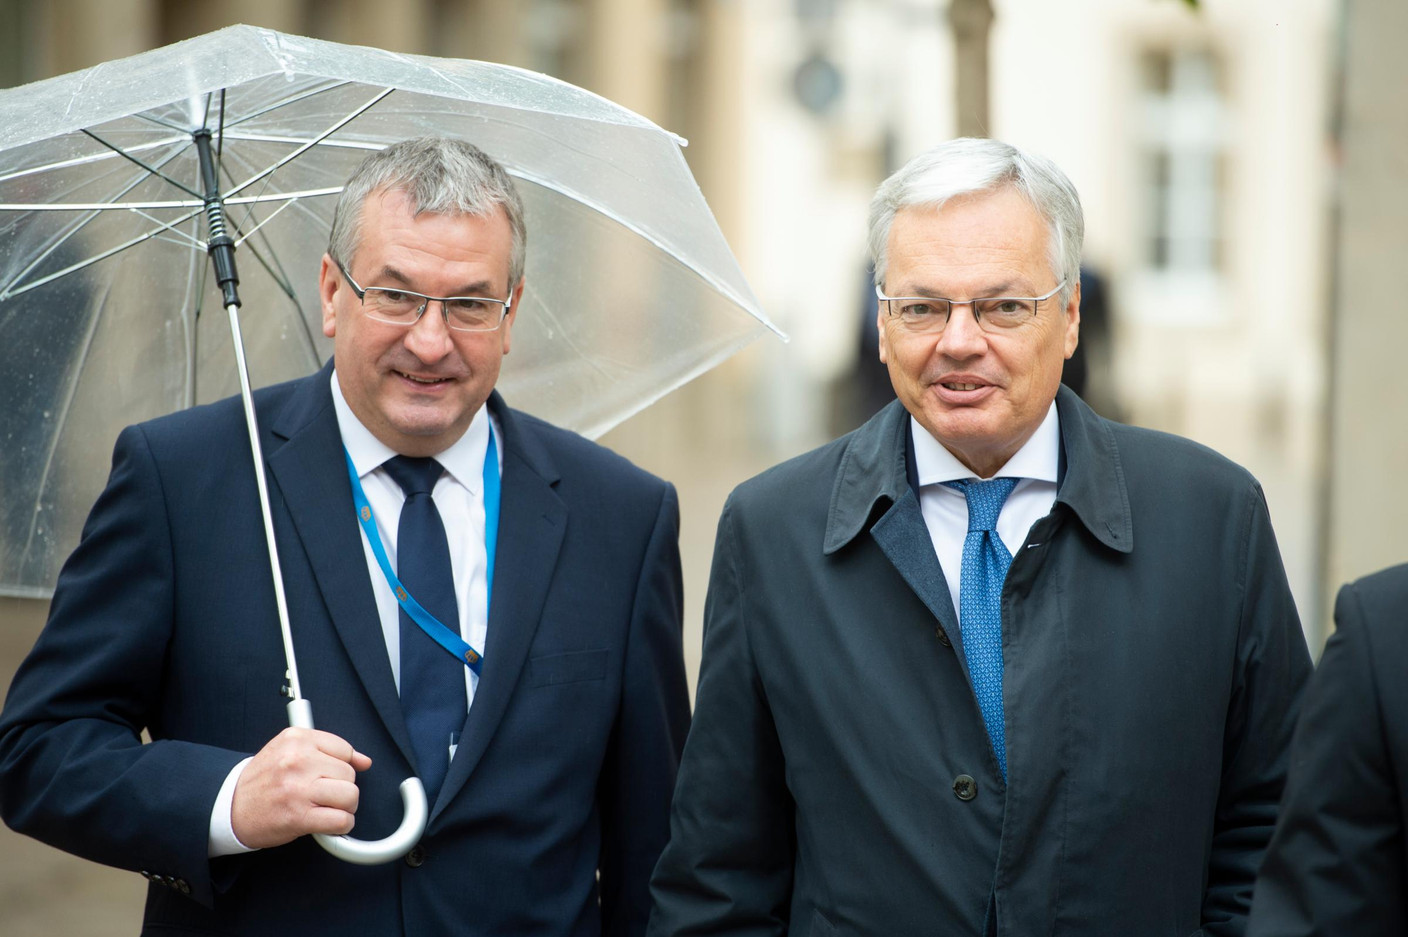 Pierre-Yves Jeholet (ministre-président de la Fédération Wallonie-Bruxelles) et Didier Reynders (vice-Premier ministre de Belgique) (Photo: Anthony Dehez)